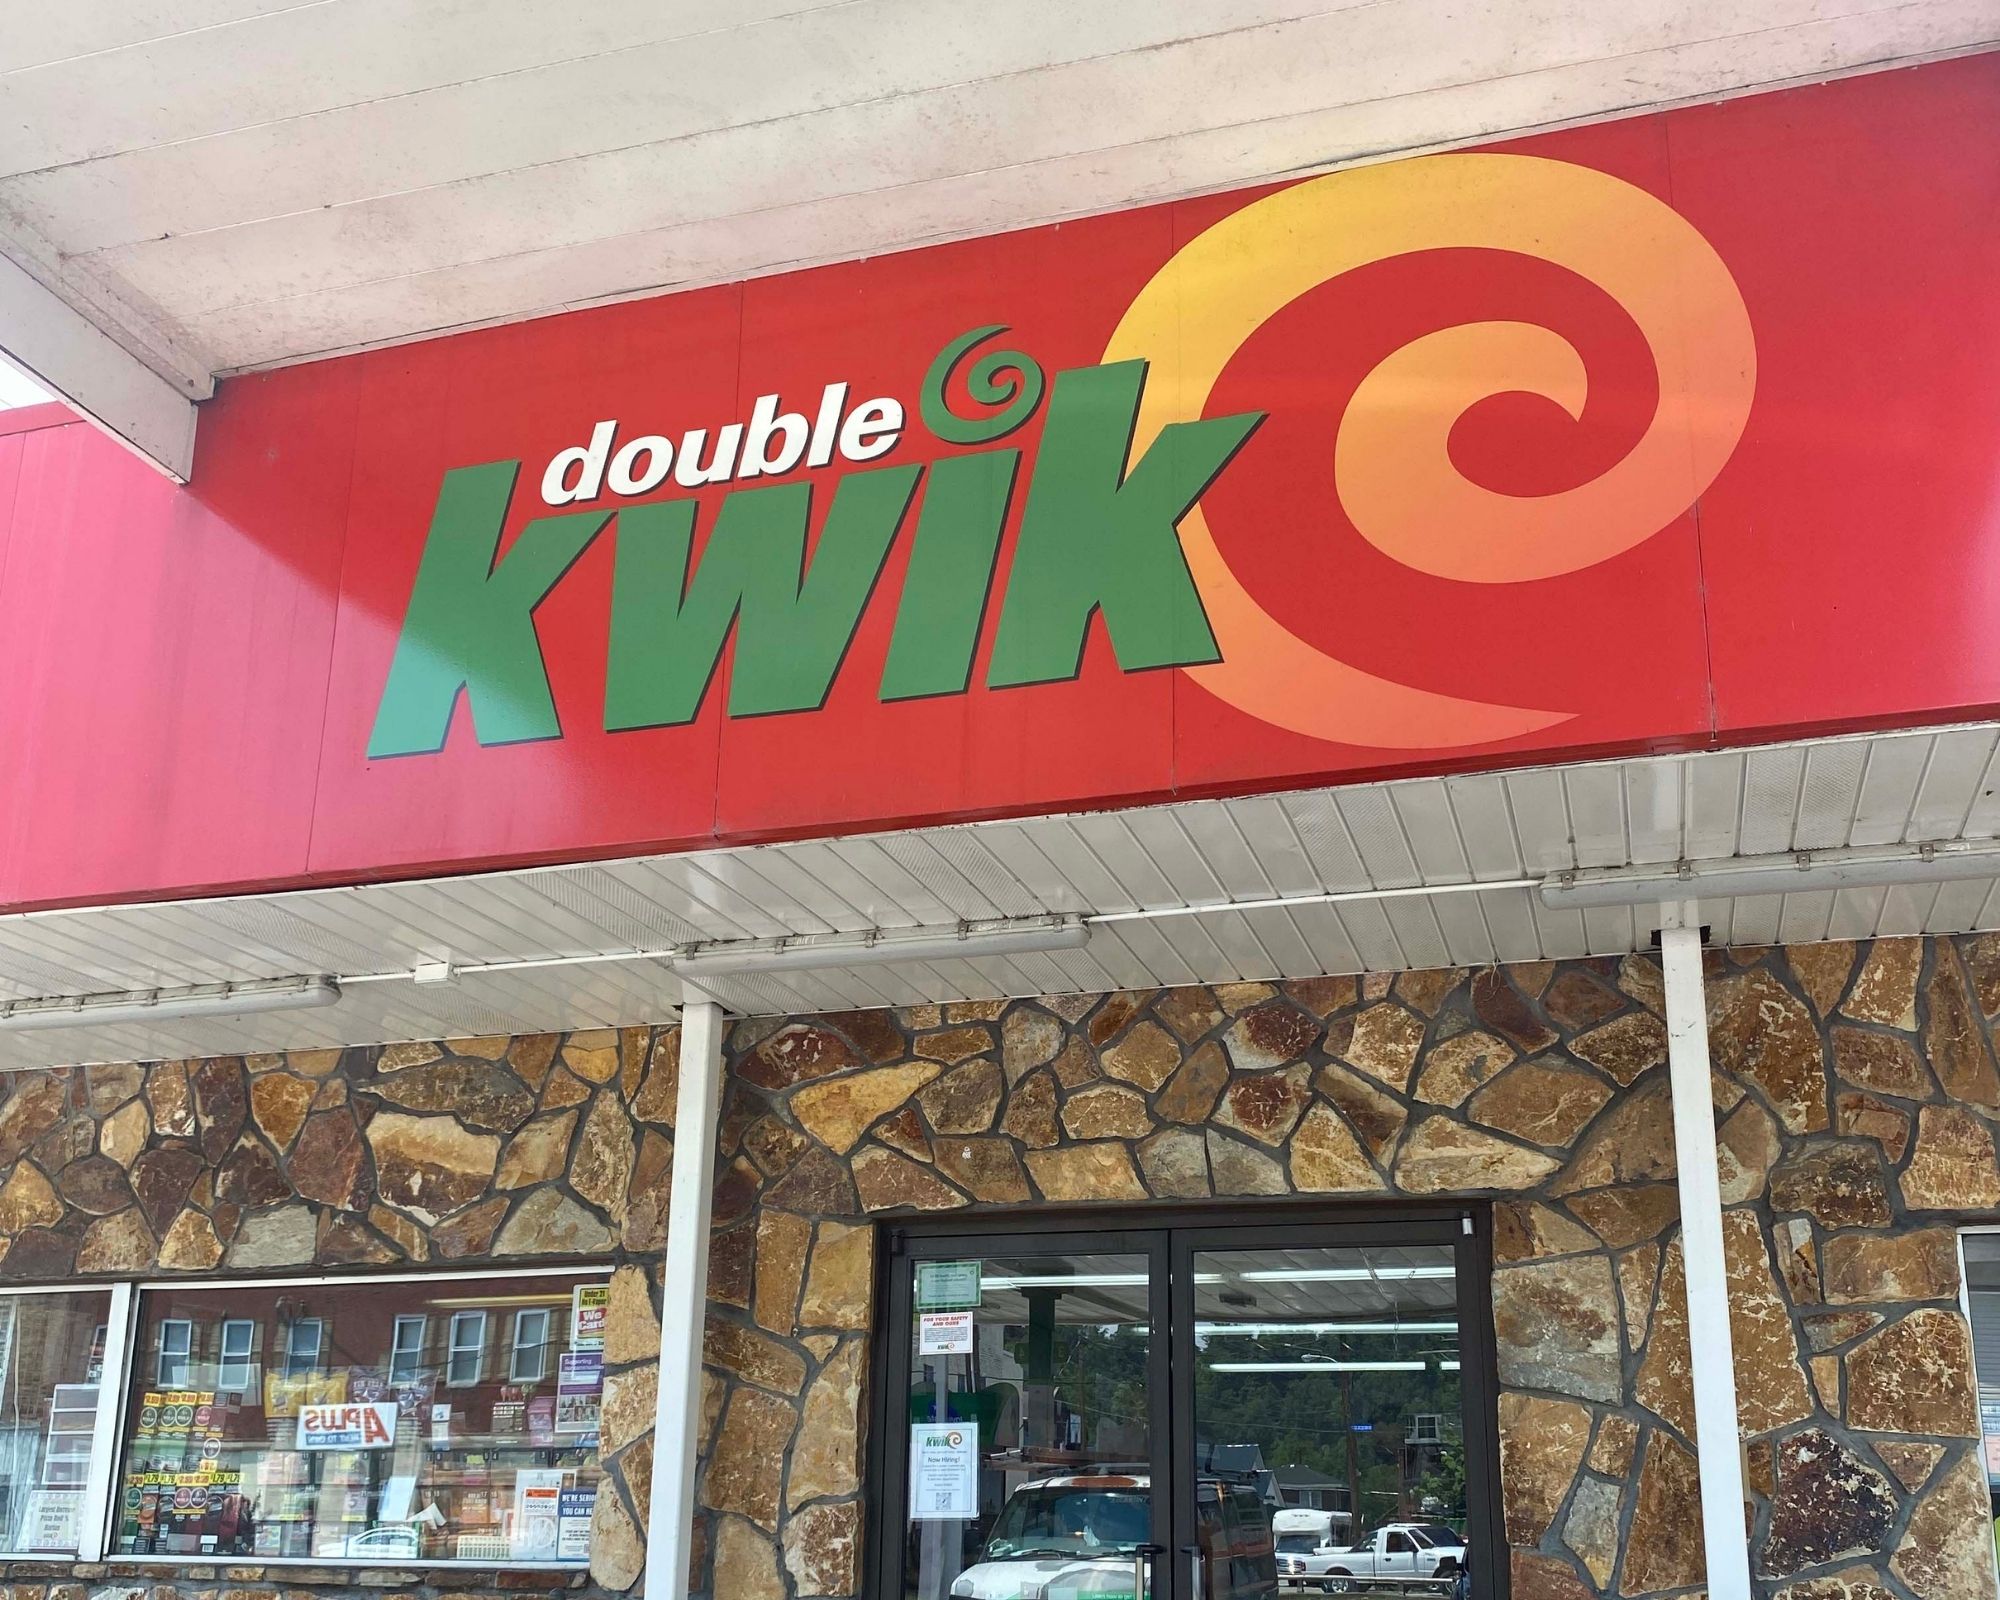 Double Kwik Scaled